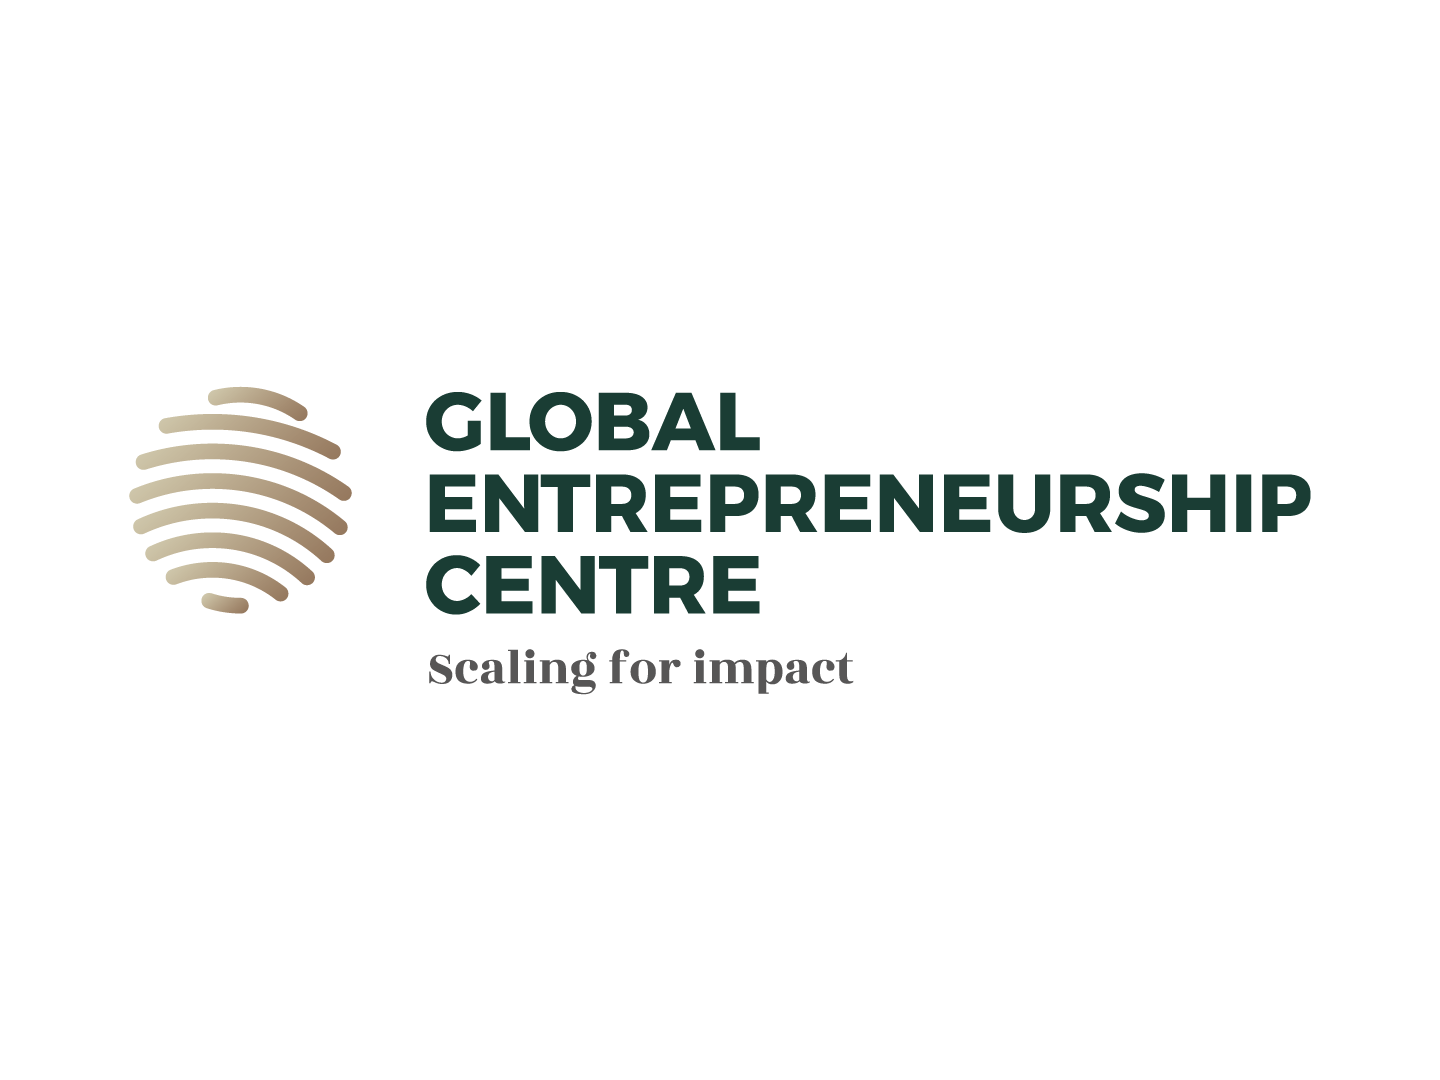 Global Entrepreneurship Centre veröffentlicht neue Ausschreibung für nachhaltige Startups